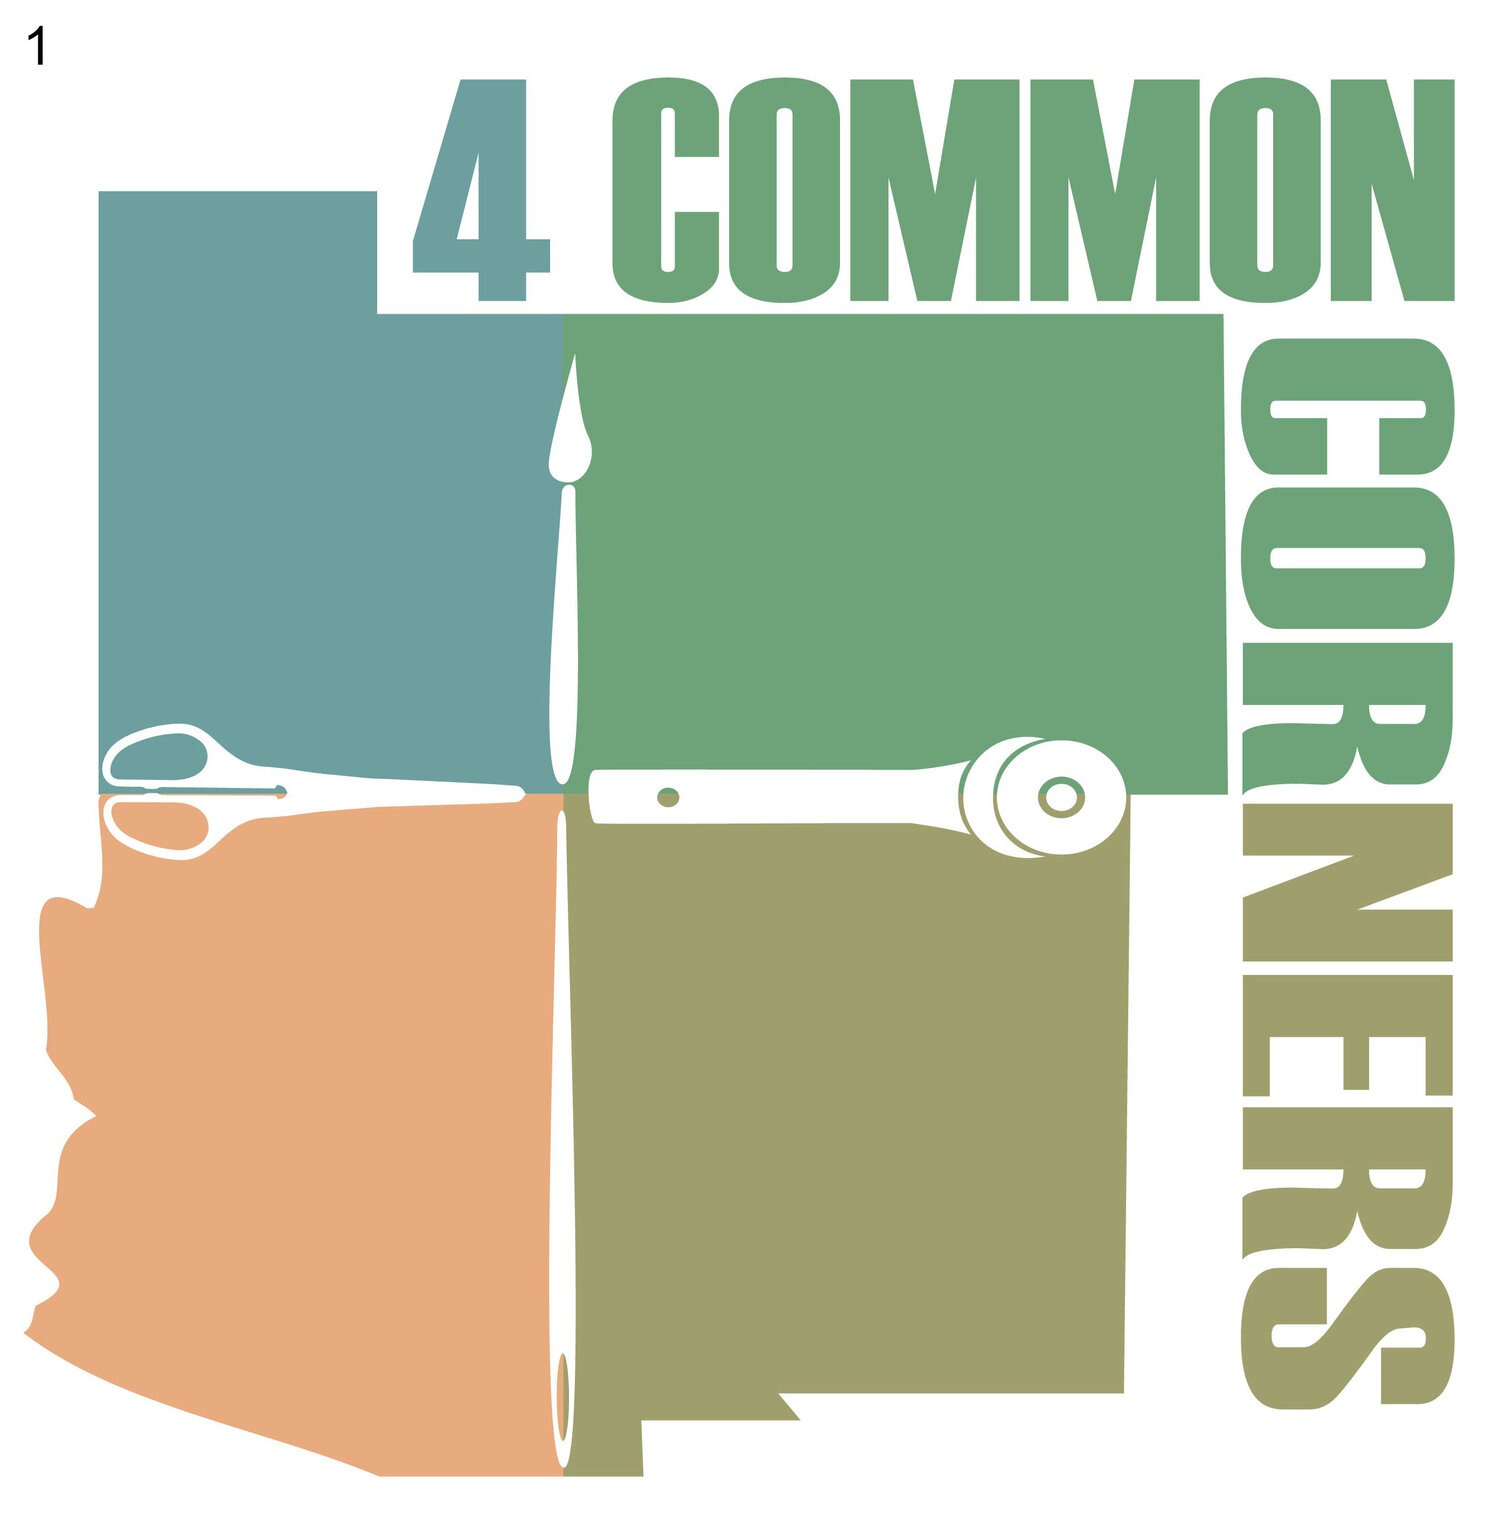 4 Common Corners